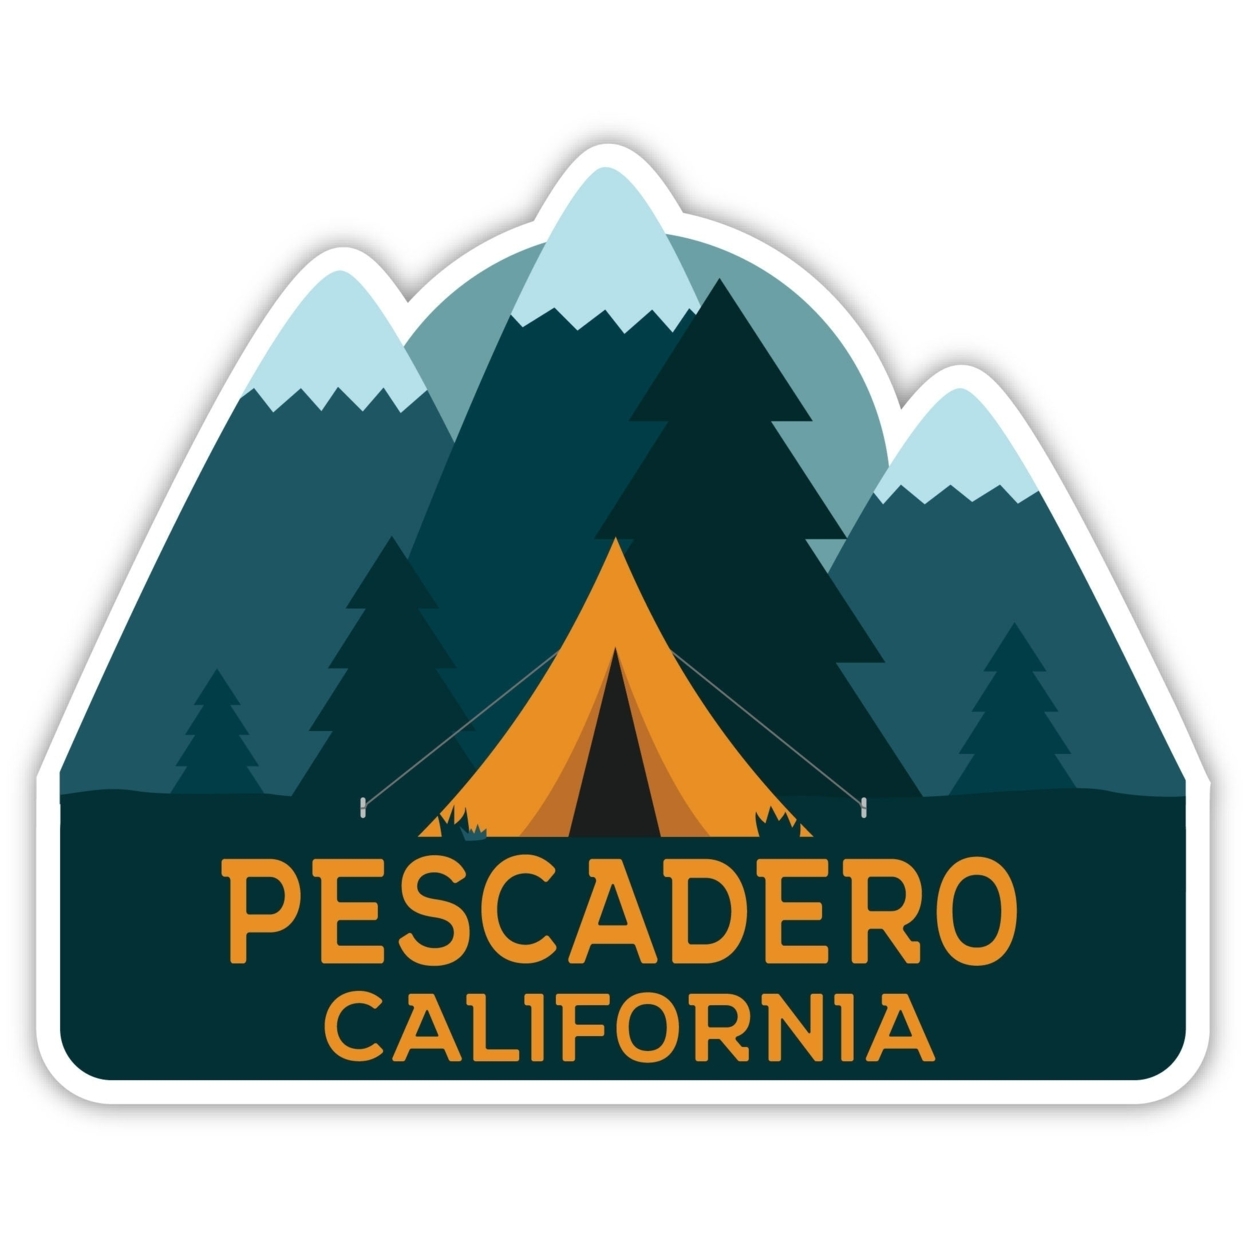 Pescadero California Souvenir Decorative Stickers (Choose Theme And Size) - Single Unit, 4-Inch, Tent